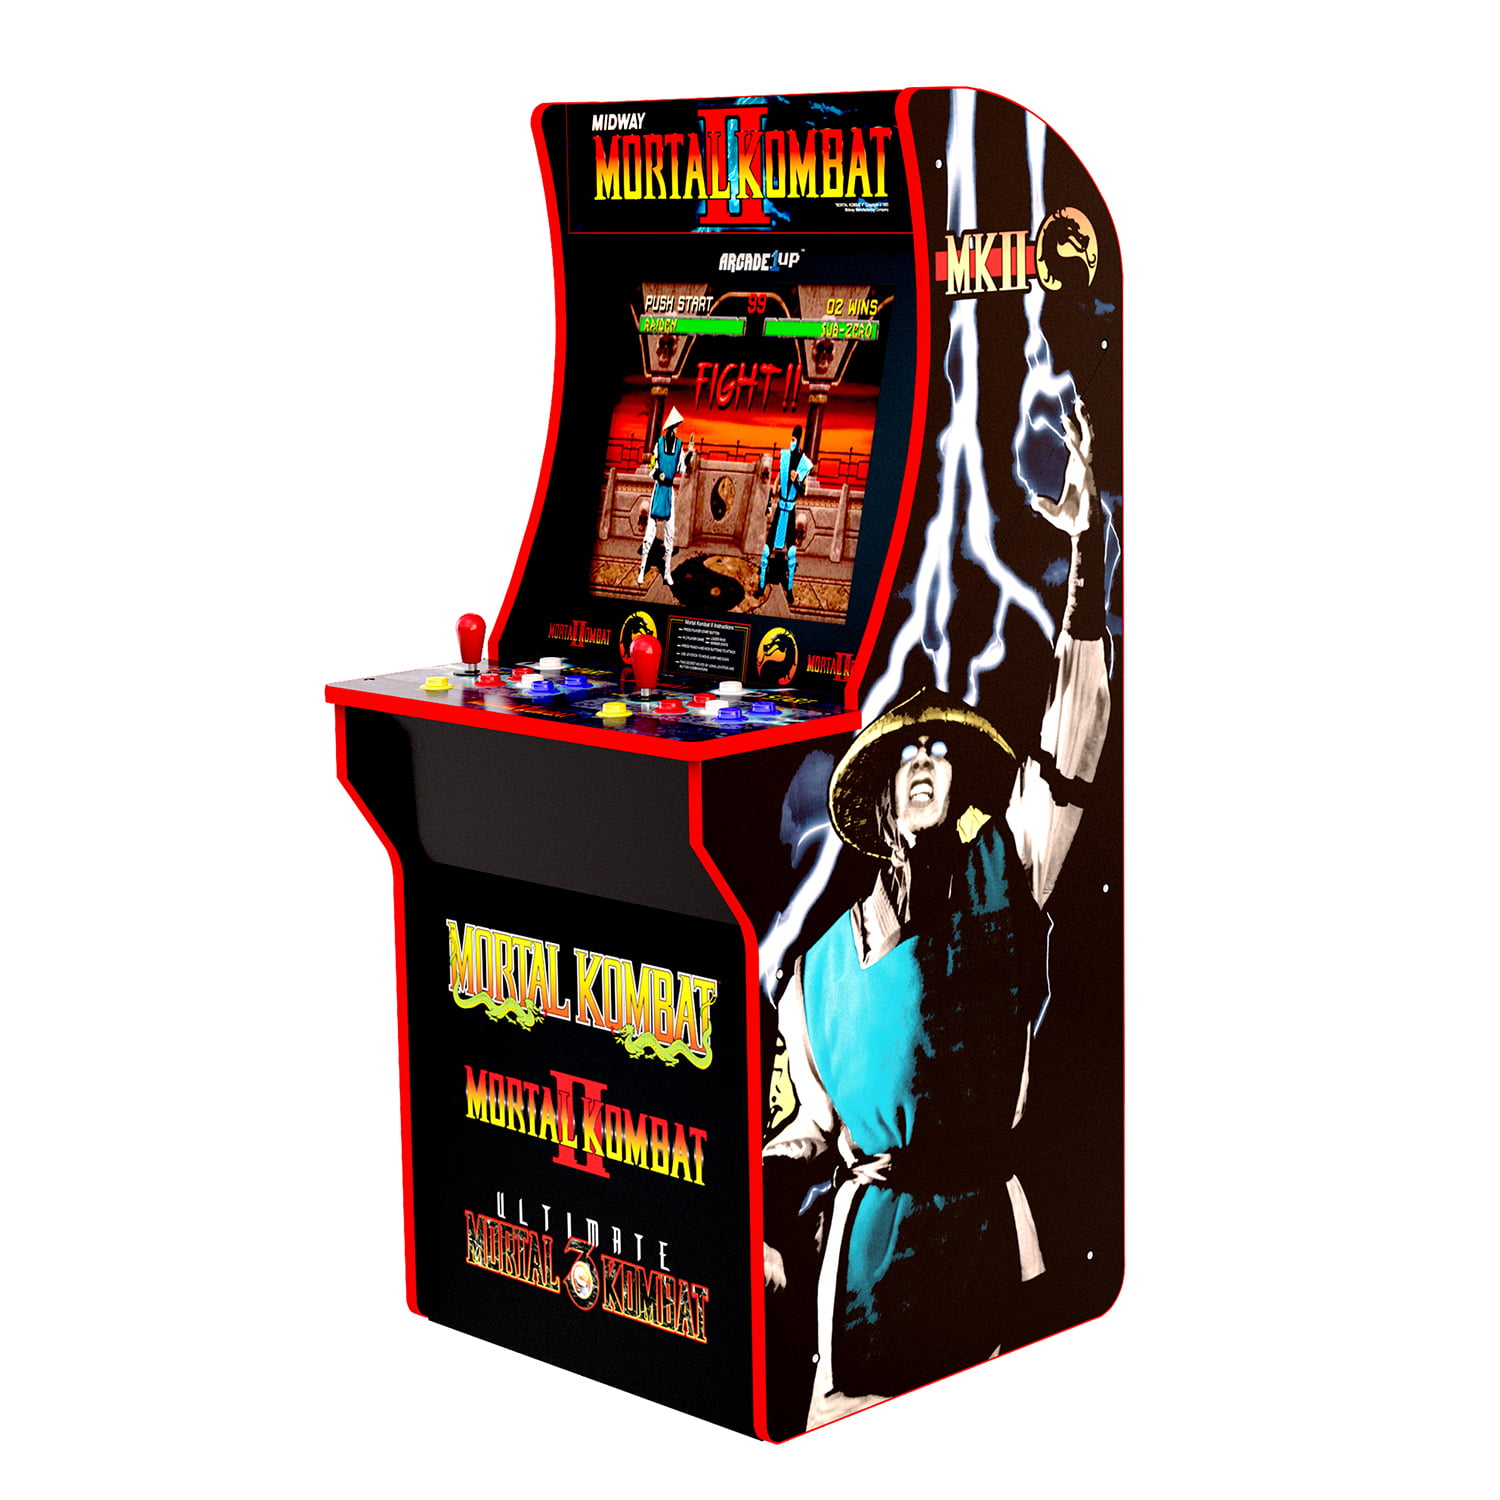 Mortal Kombat Arcade Machine Arcade1up 4ft Includes Mortal